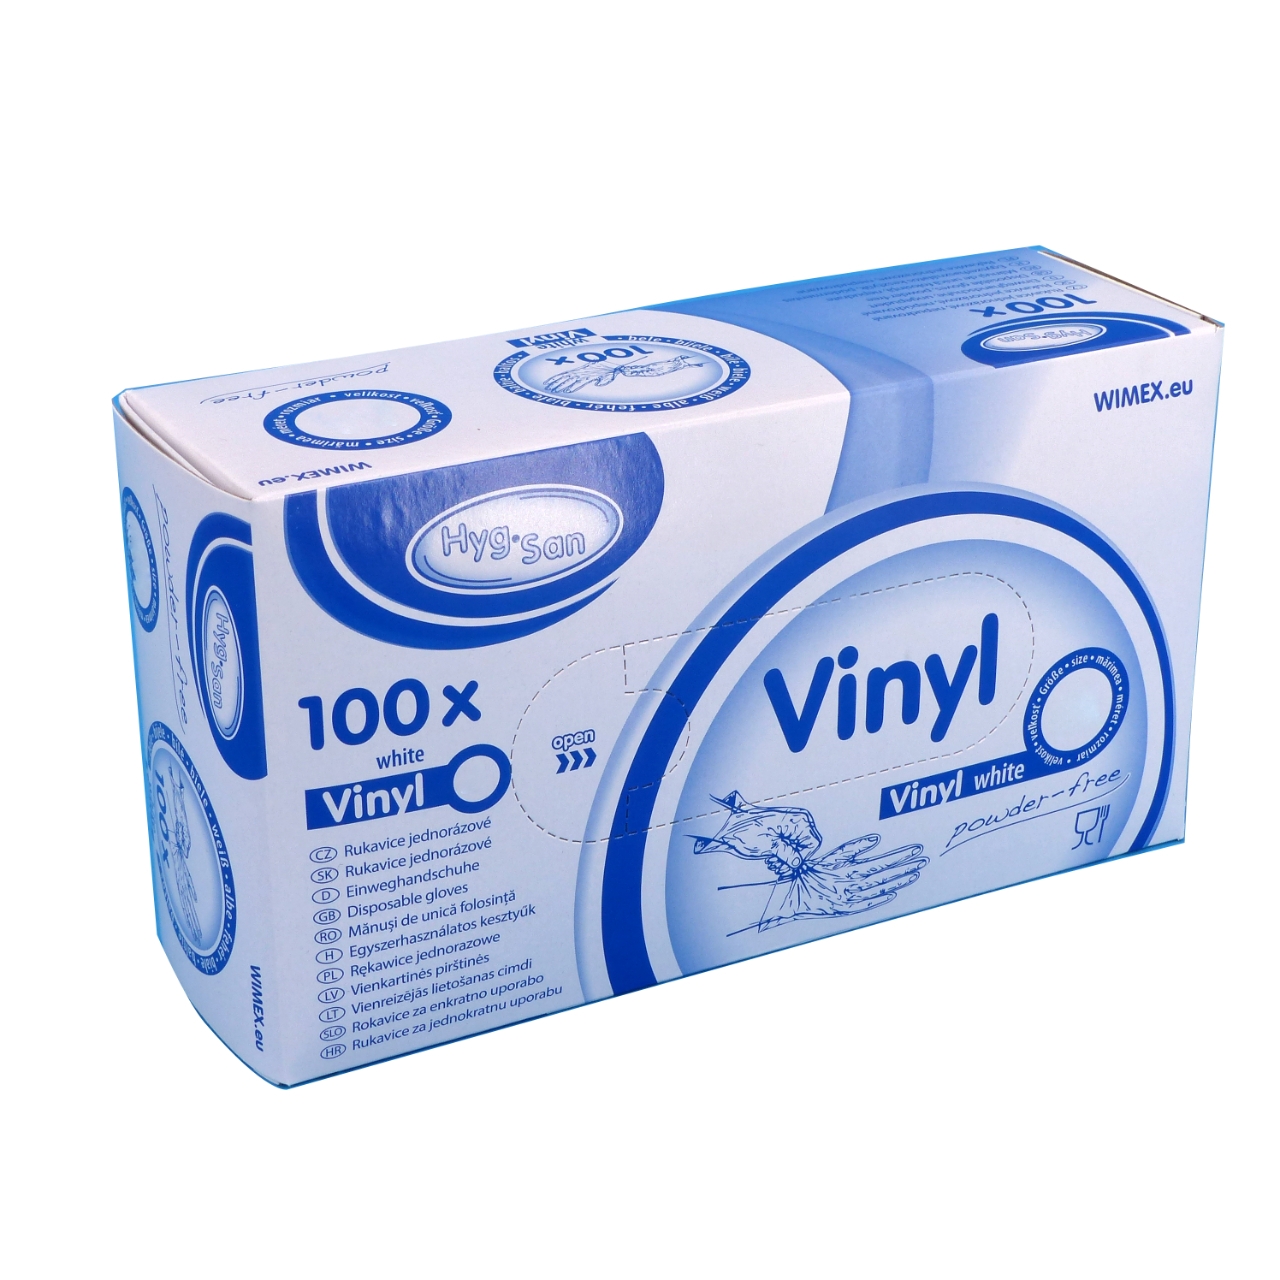 Vinyl Handschuhe XL, ungepudert, weiß, 100er Spenderbox